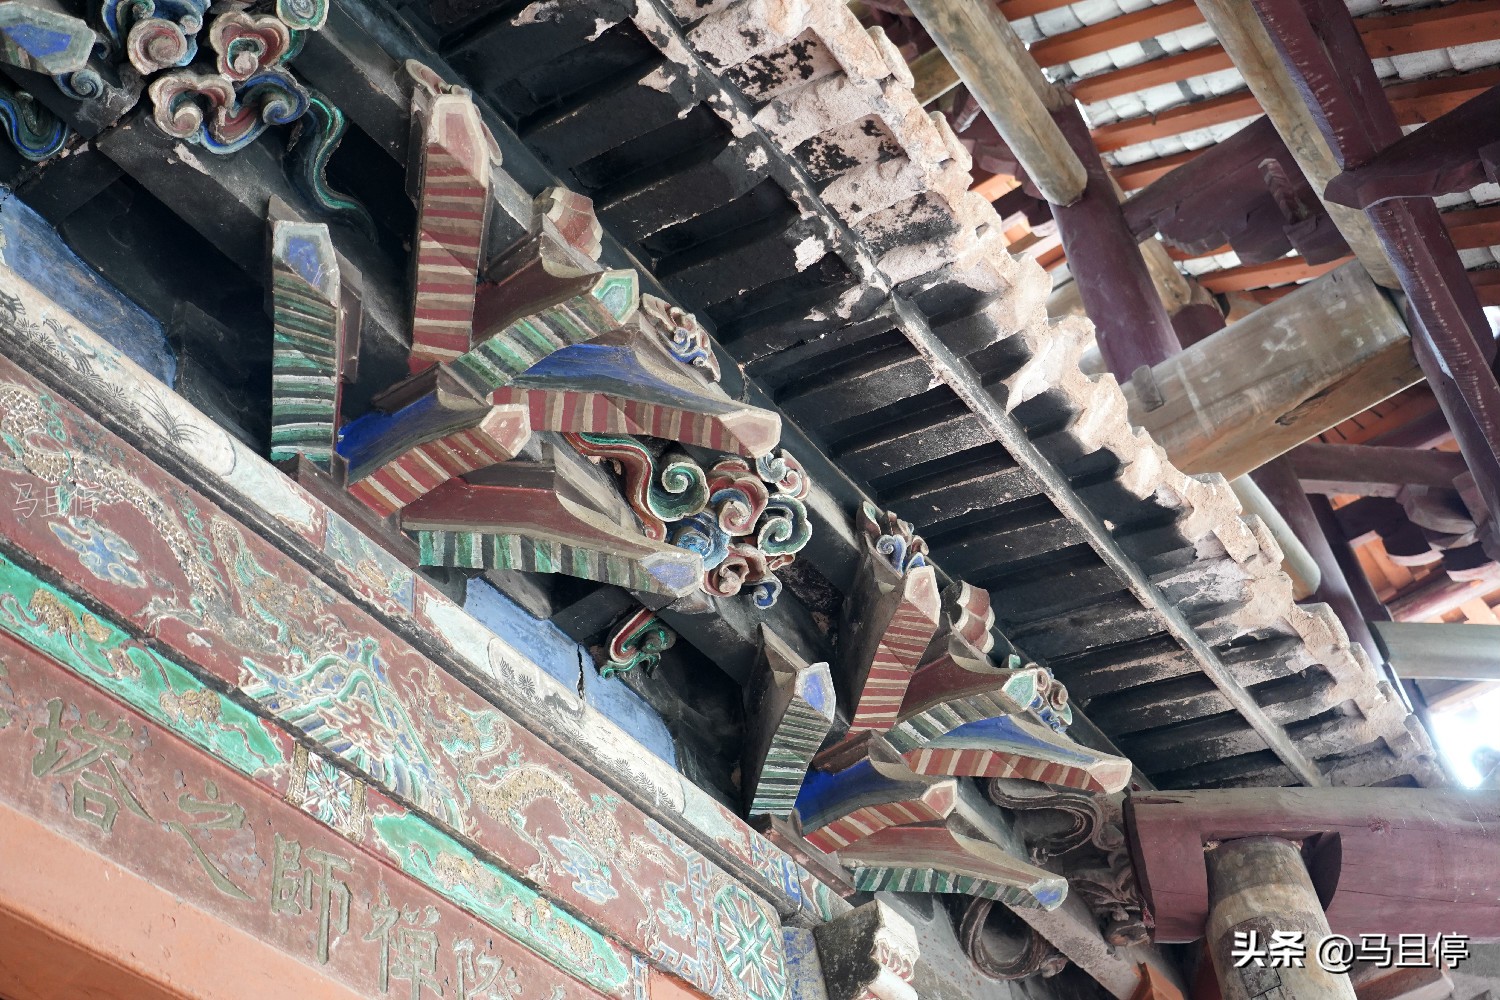 四川特别的寺庙，“木”结构大殿都用石头打造，免费却鲜有游客